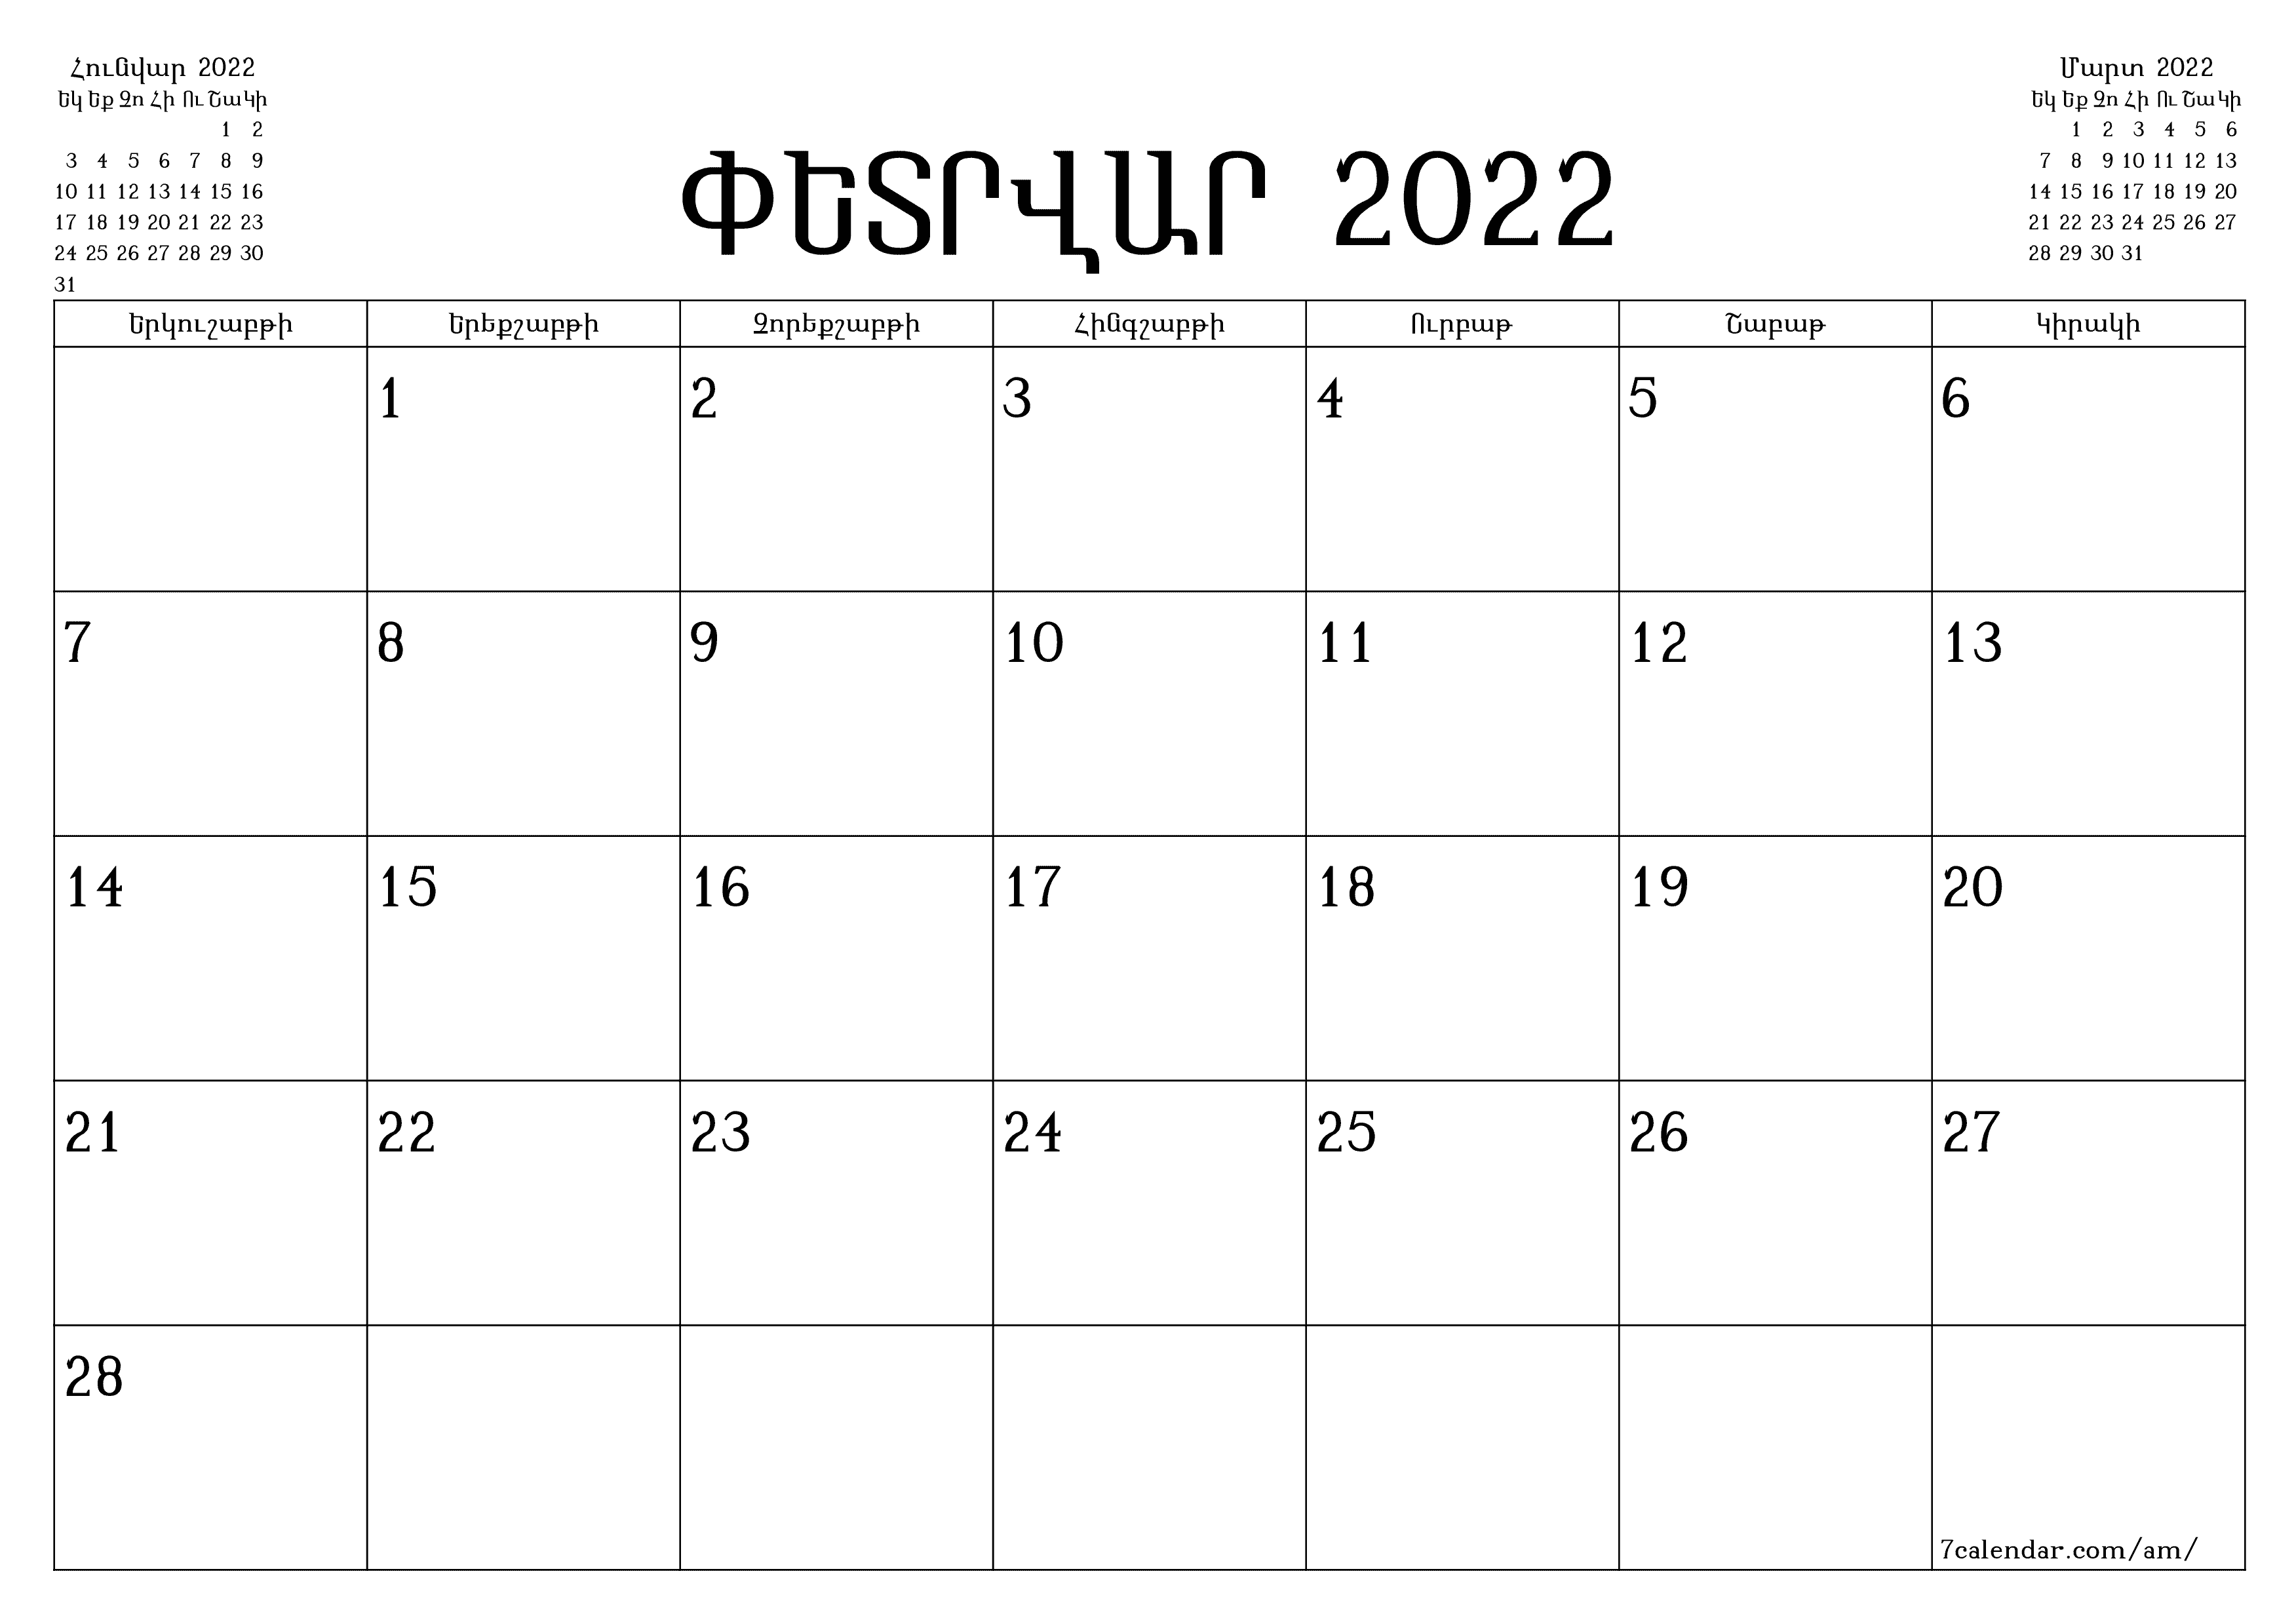 տպագրվող պատի ի ձևանմուշ անվճար հորիզոնական Ամսական պլանավորող օրացույց Փետրվար (Փետ) 2022